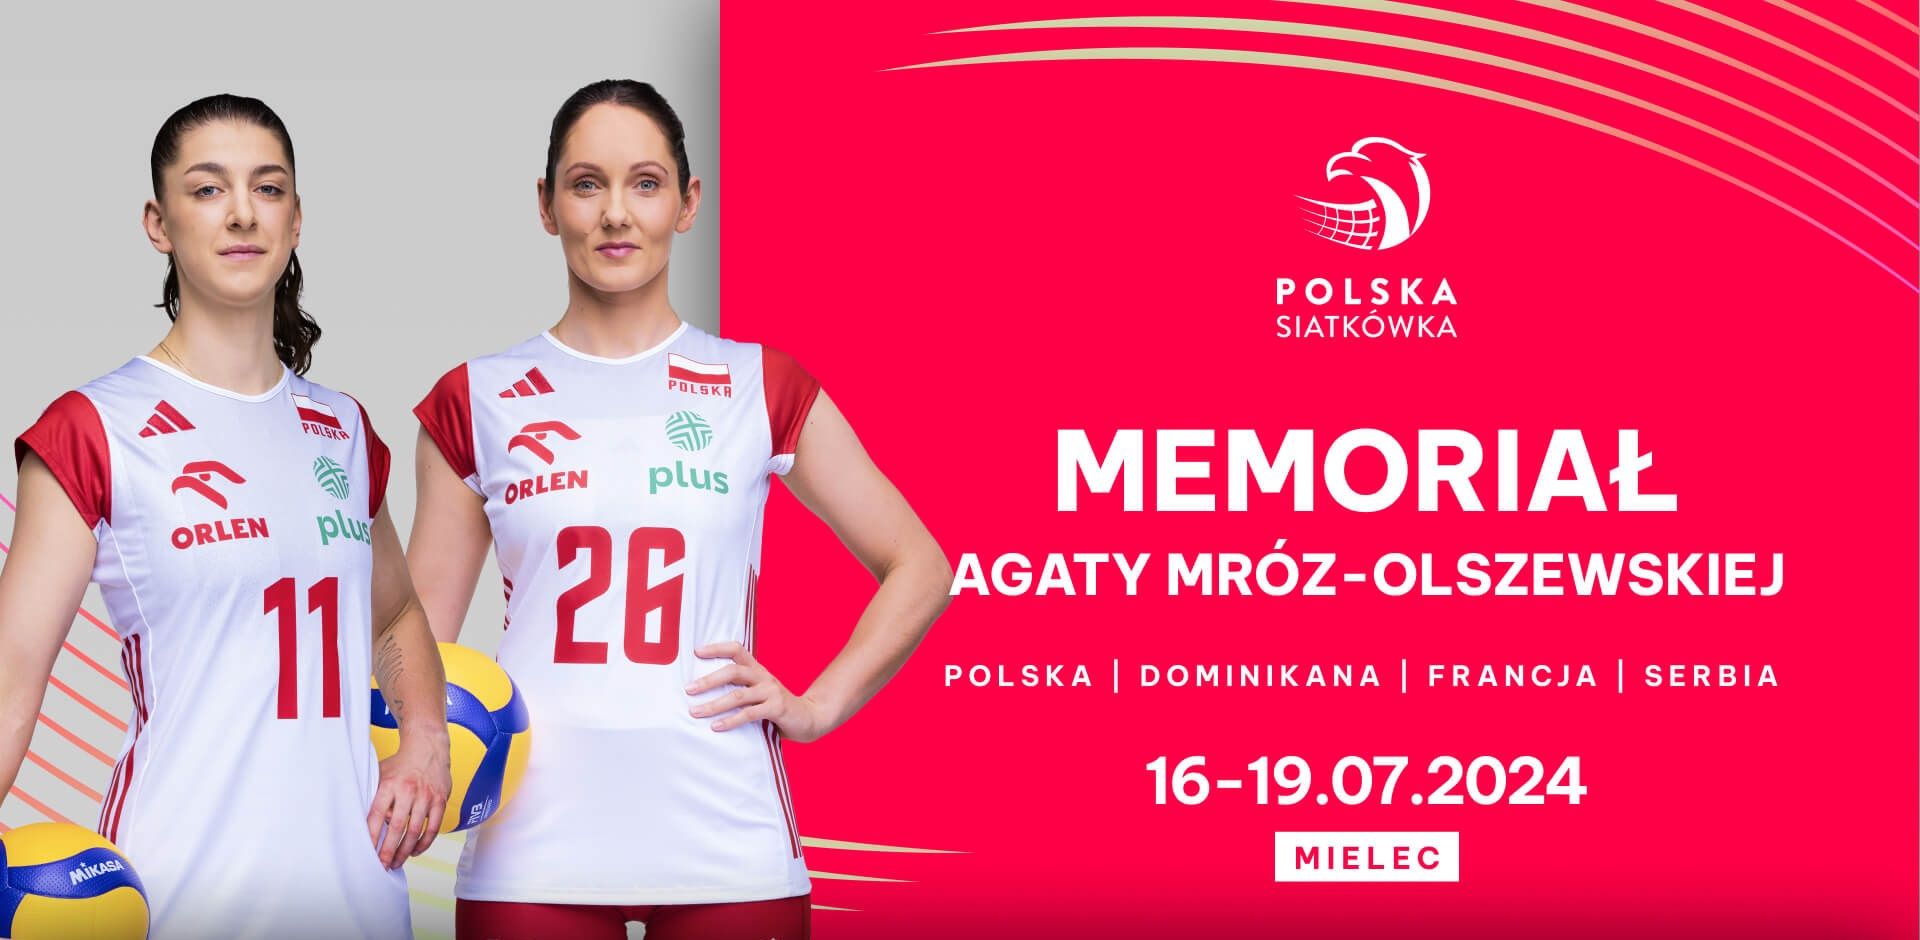  Akredytacje na Memoriał Agaty Mróz-Olszewskiej w Mielcu